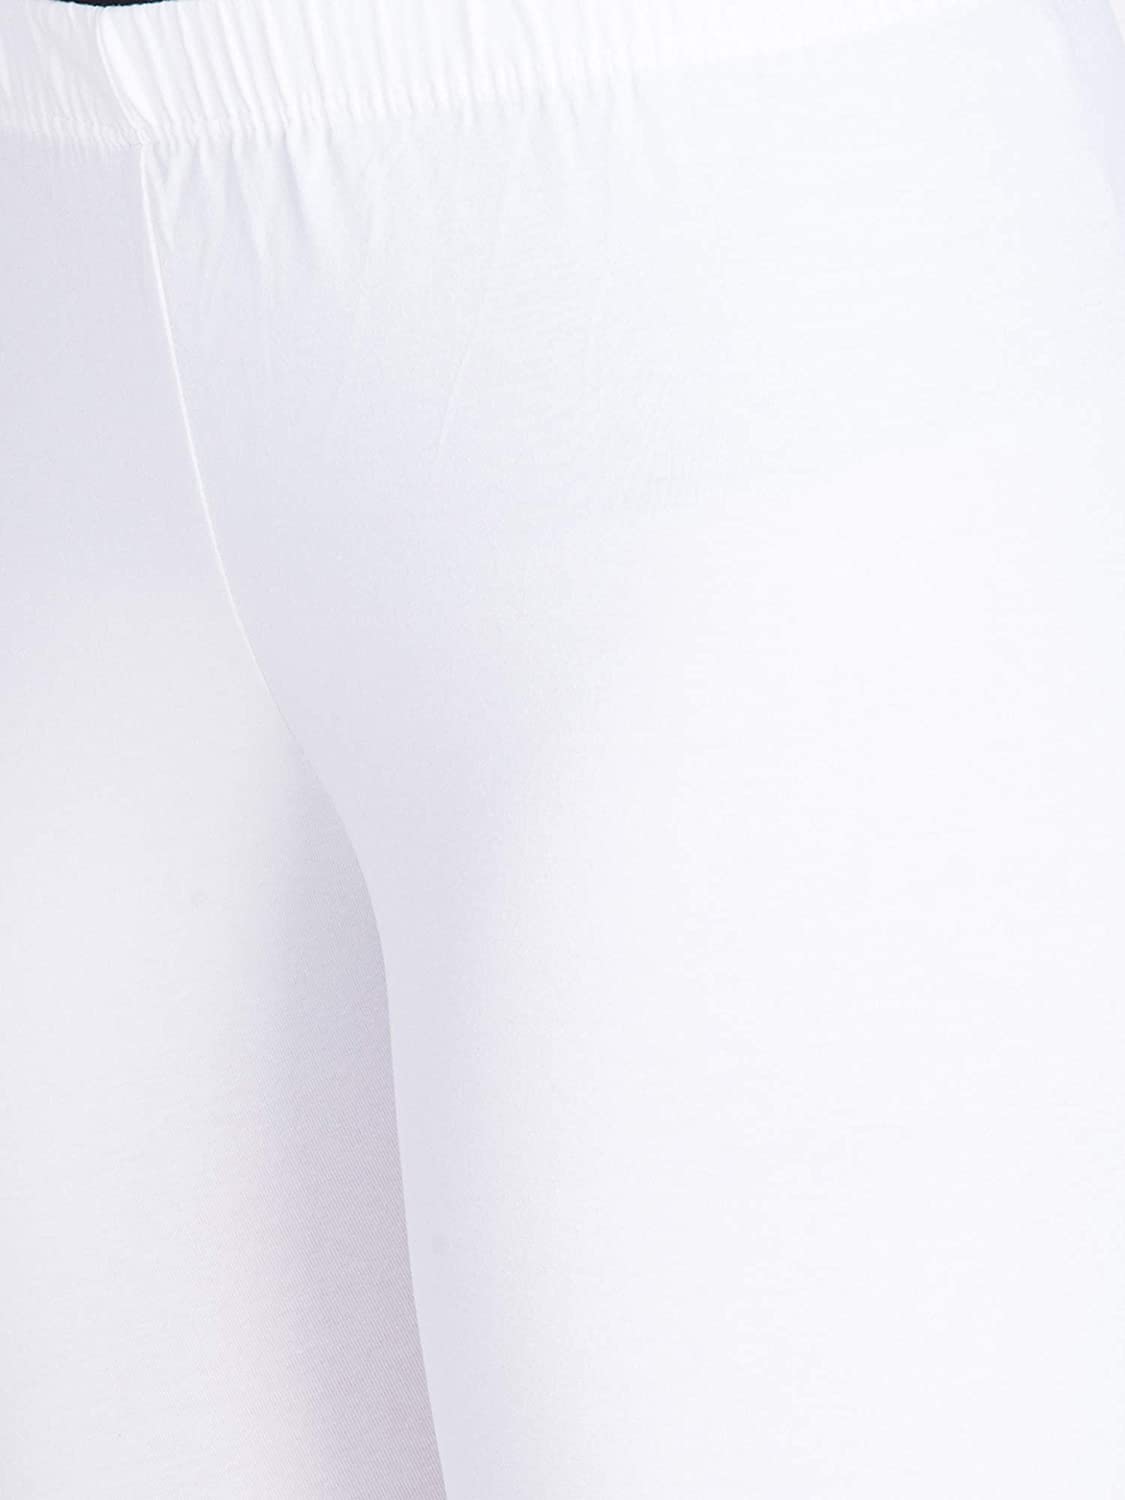 Lux Lyra Ankle Length White Leggings free Size for Ladies - Stilento